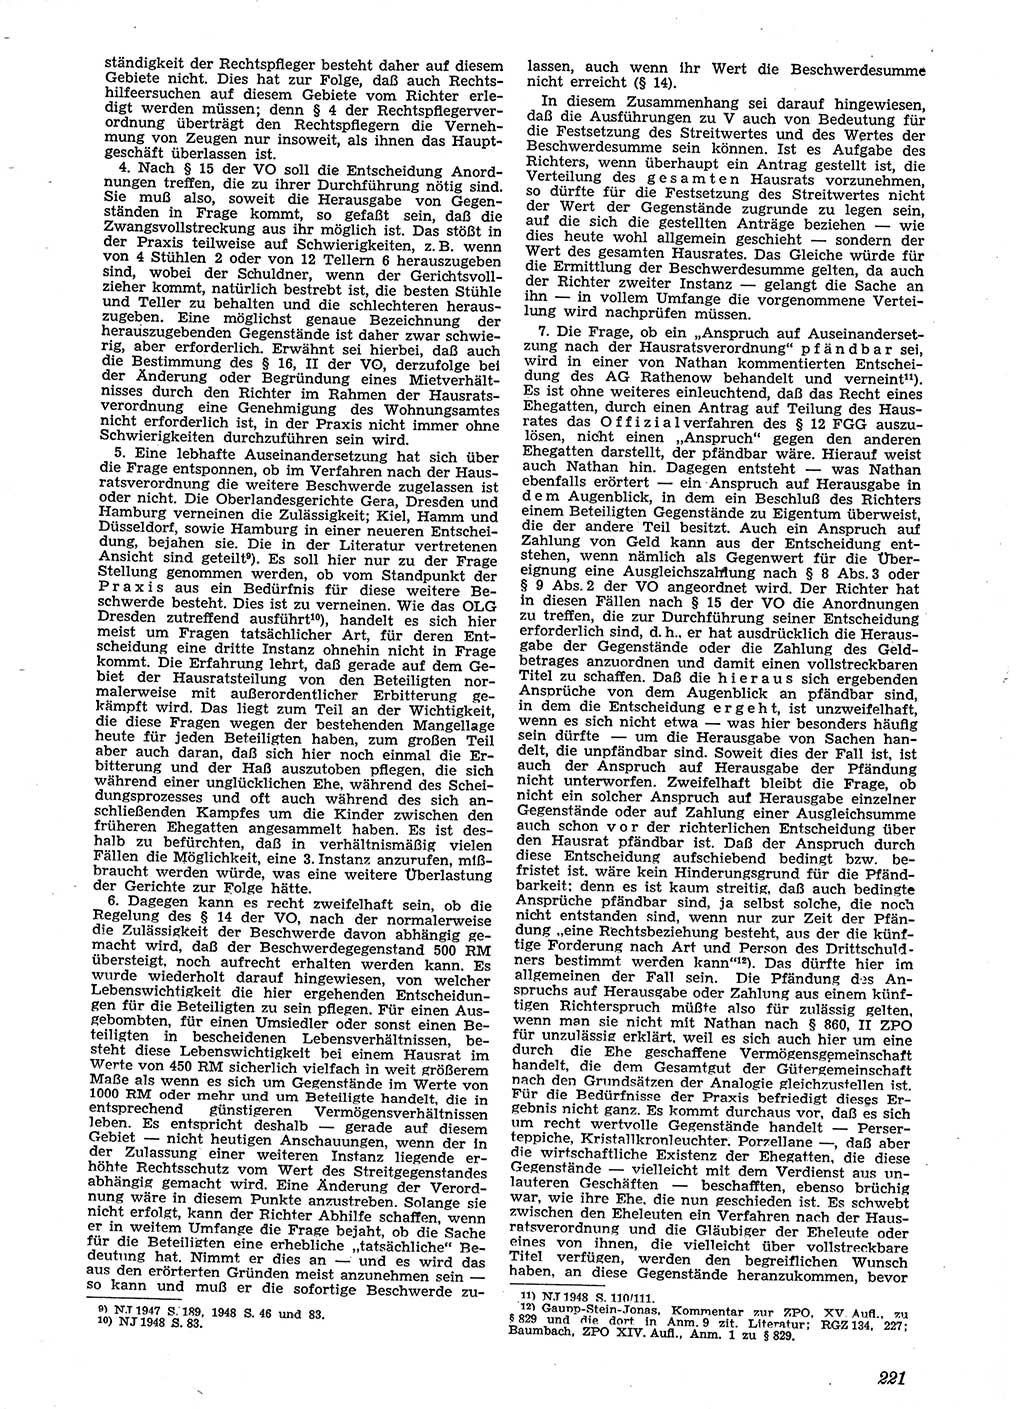 Neue Justiz (NJ), Zeitschrift für Recht und Rechtswissenschaft [Sowjetische Besatzungszone (SBZ) Deutschland], 2. Jahrgang 1948, Seite 221 (NJ SBZ Dtl. 1948, S. 221)